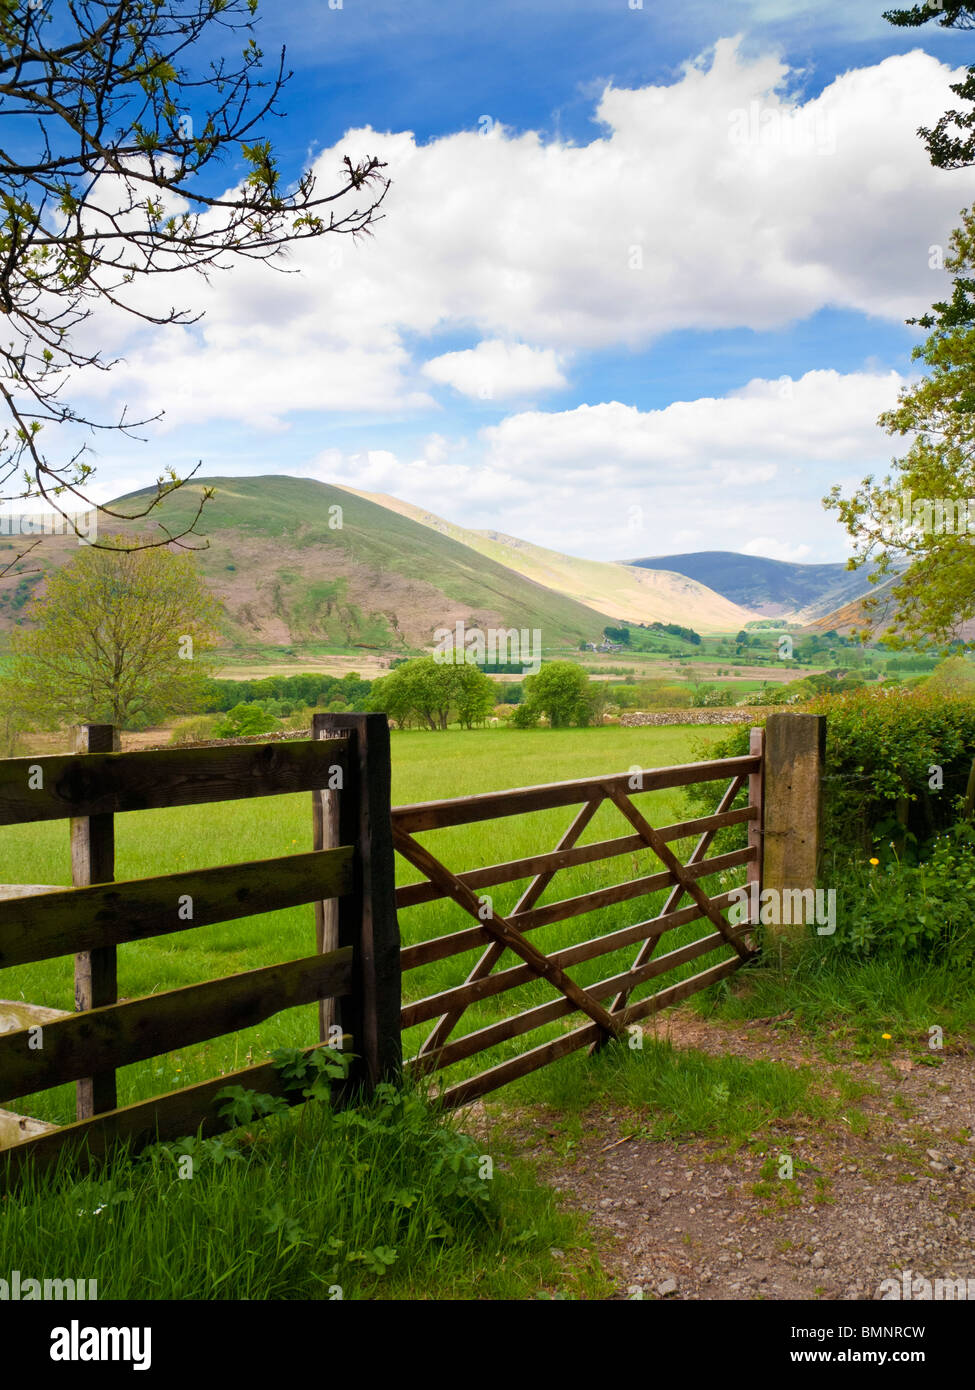 Lake District typique scène rurale avec barrière en bois Cumbria England UK Banque D'Images